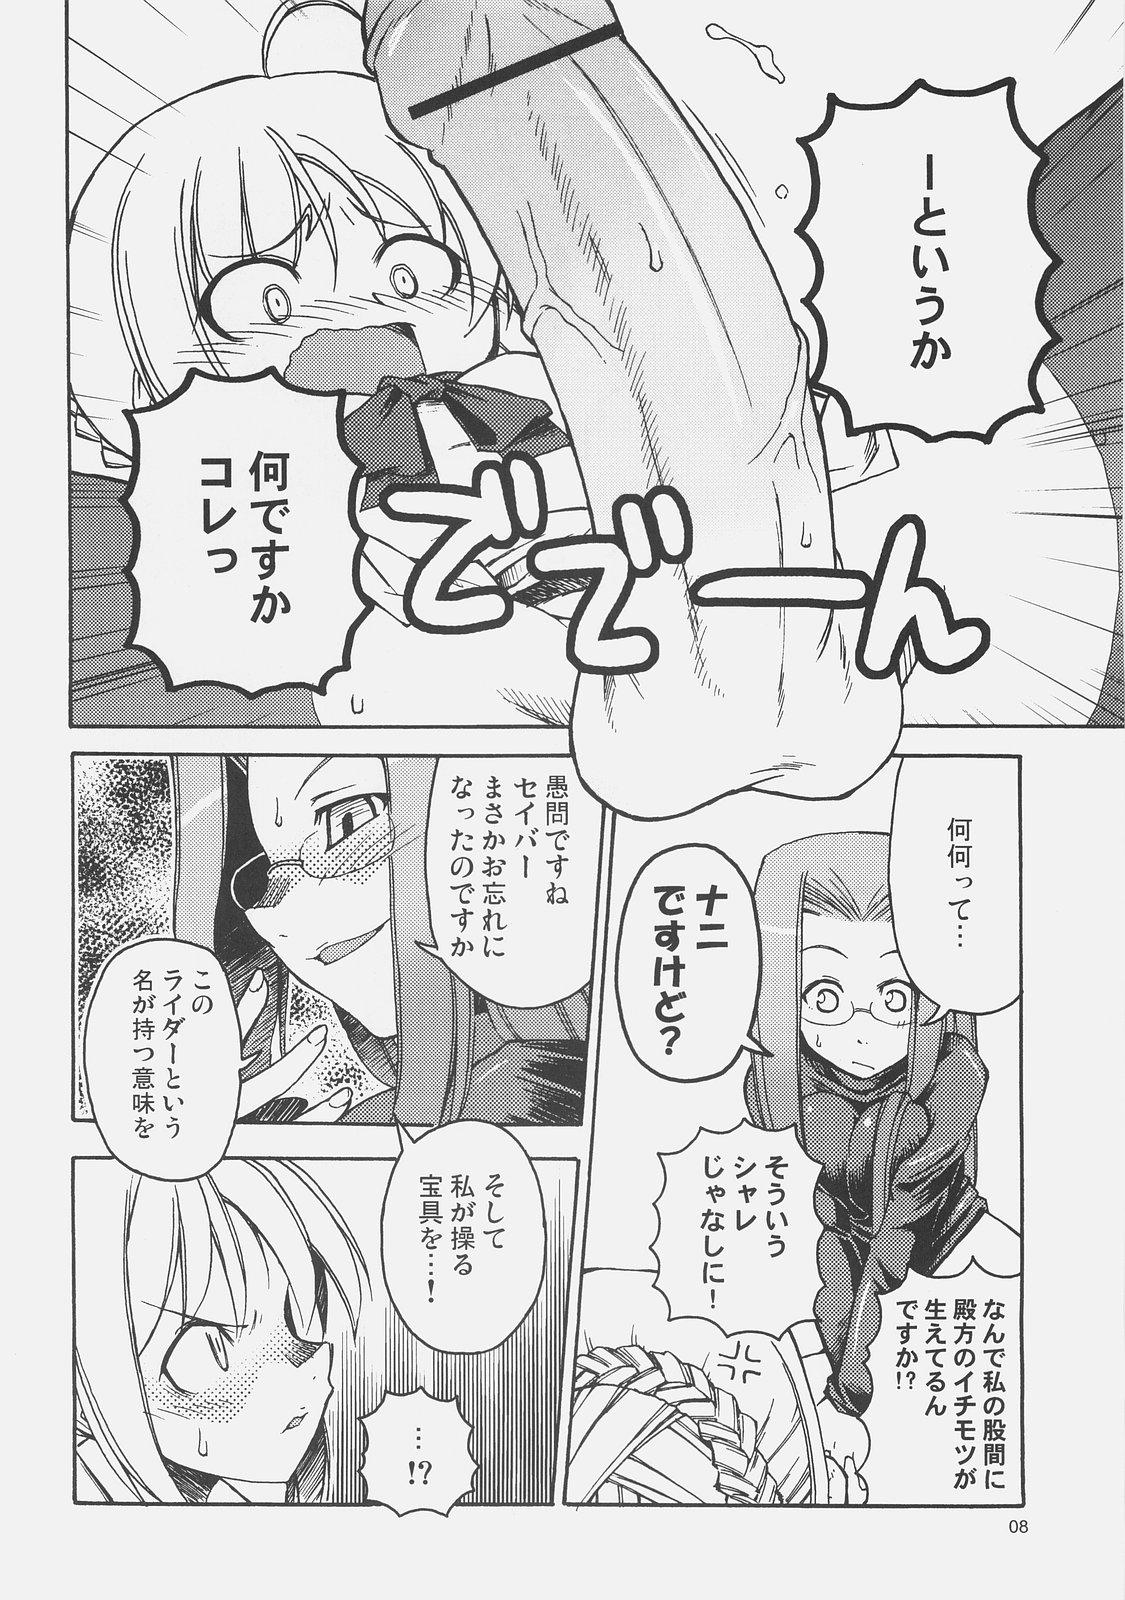 Hot Mom Kishi to Kihei no Ichinichi - Fate hollow ataraxia Bailando - Page 7